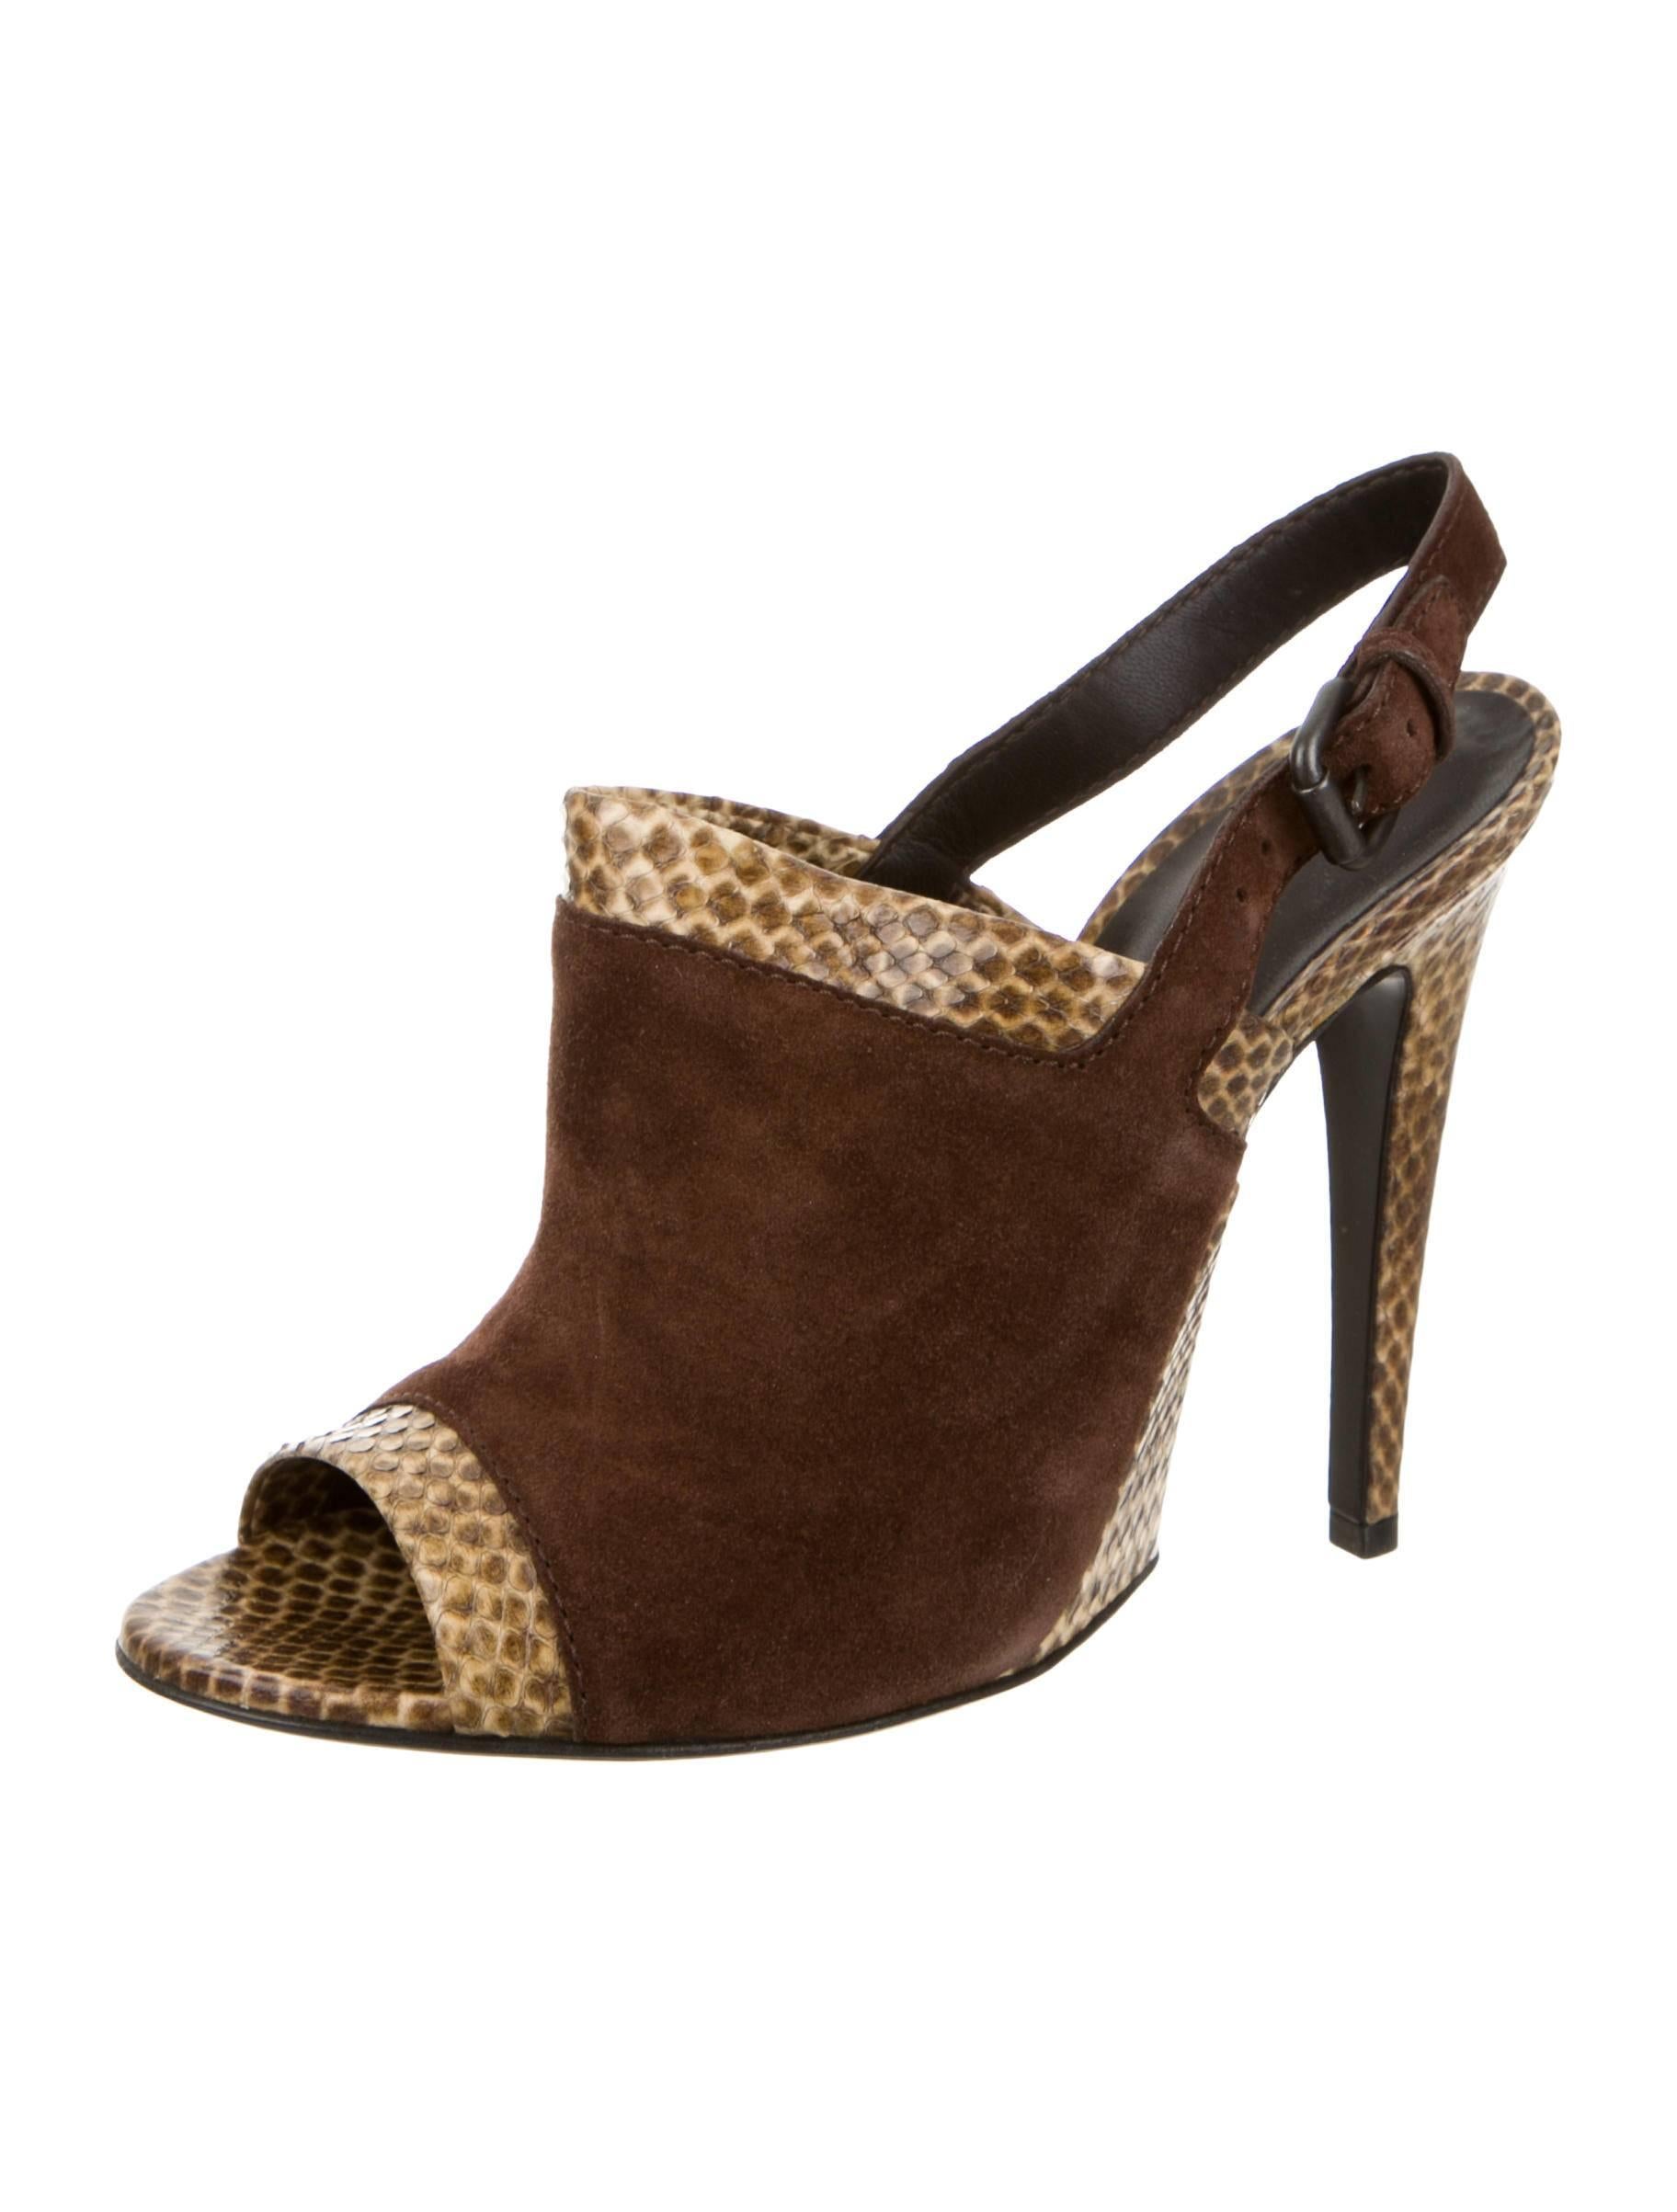 Women's Bottega Veneta NEW & SOLD OUT Brown Suede Snake Mule Sandals Heels in Box